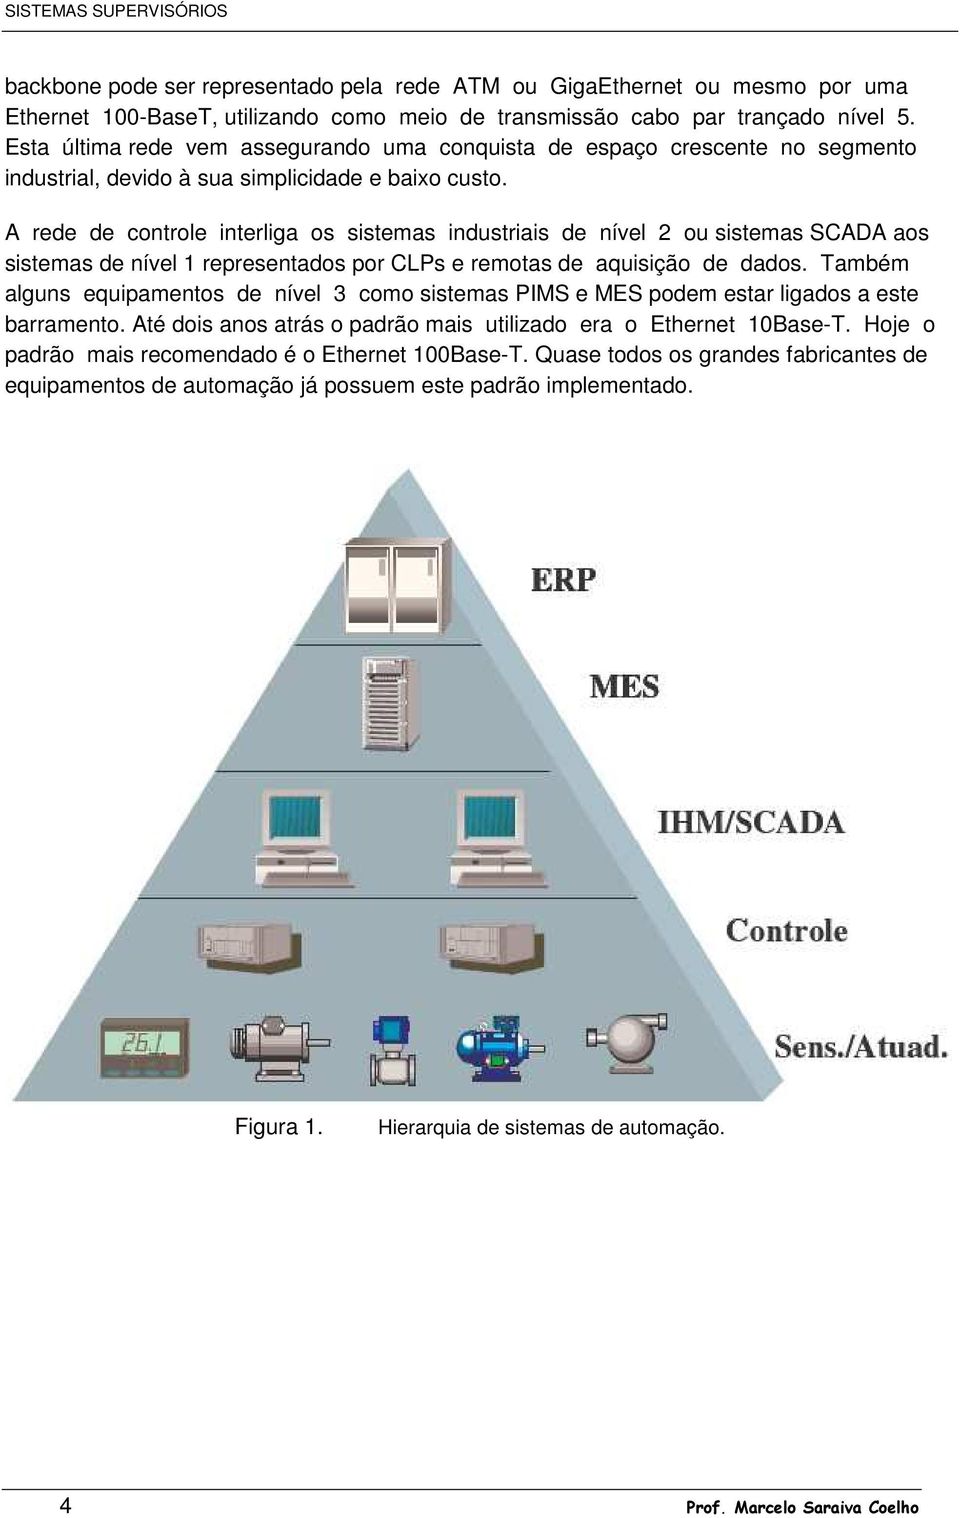 A rede de controle interliga os sistemas industriais de nível 2 ou sistemas SCADA aos sistemas de nível 1 representados por CLPs e remotas de aquisição de dados.